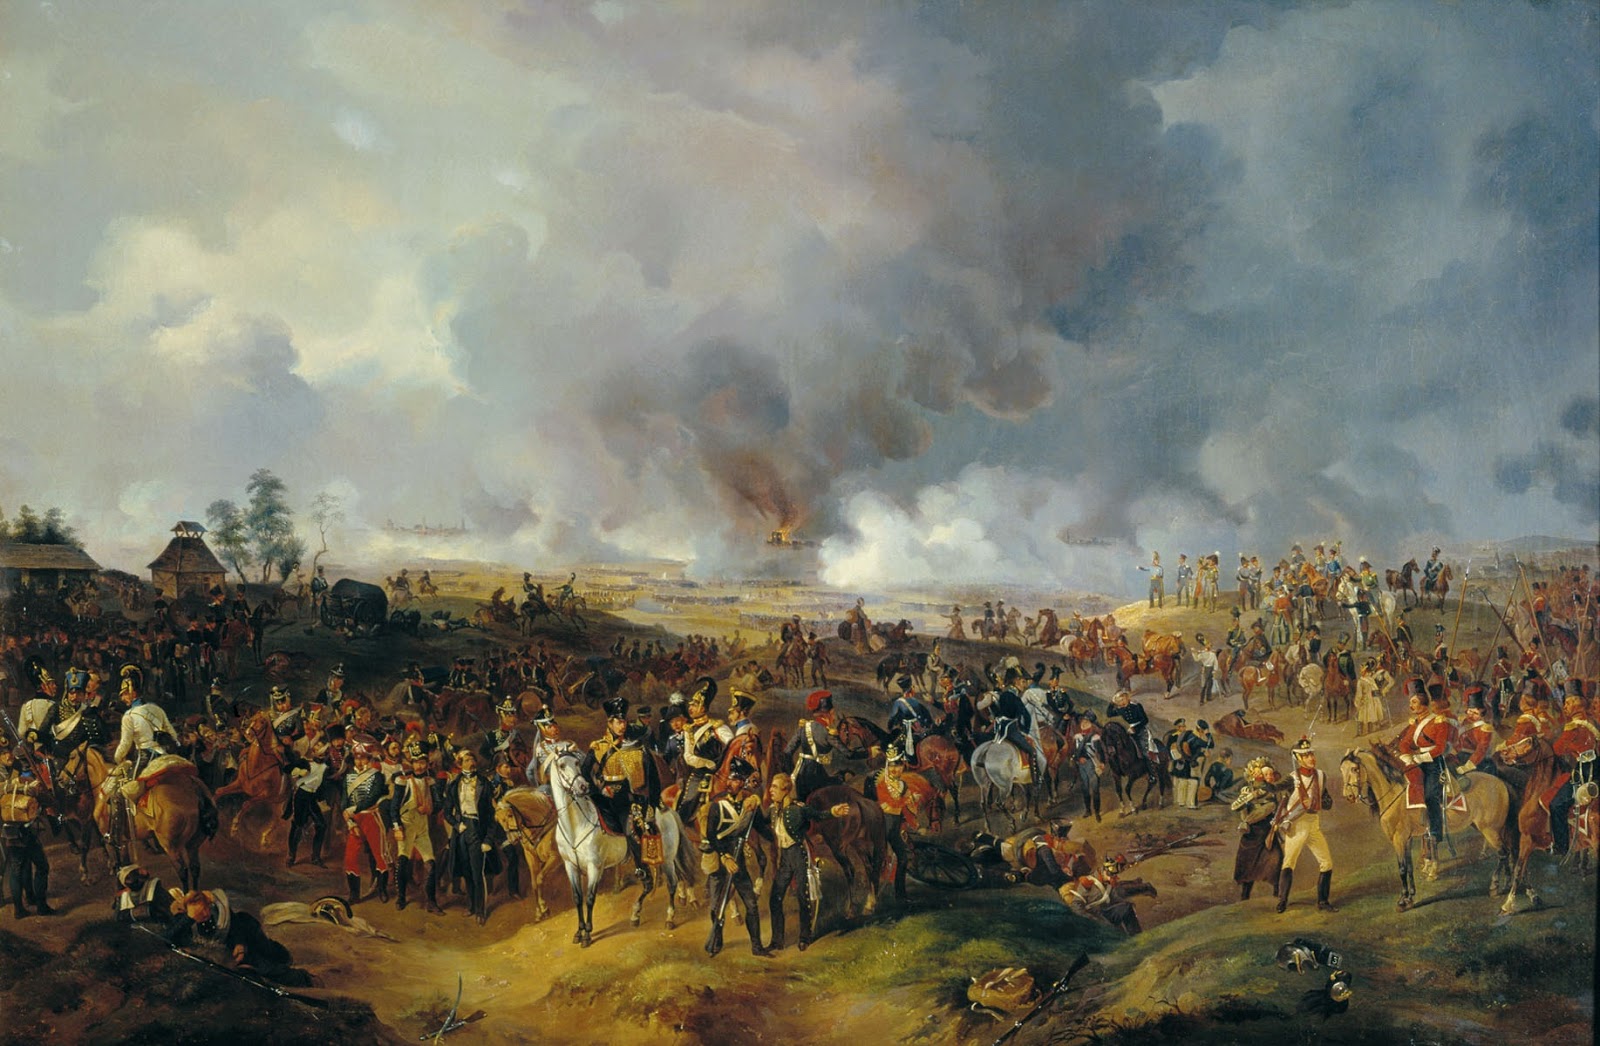 1806: Napoleon Triumphantly Enters Berlin